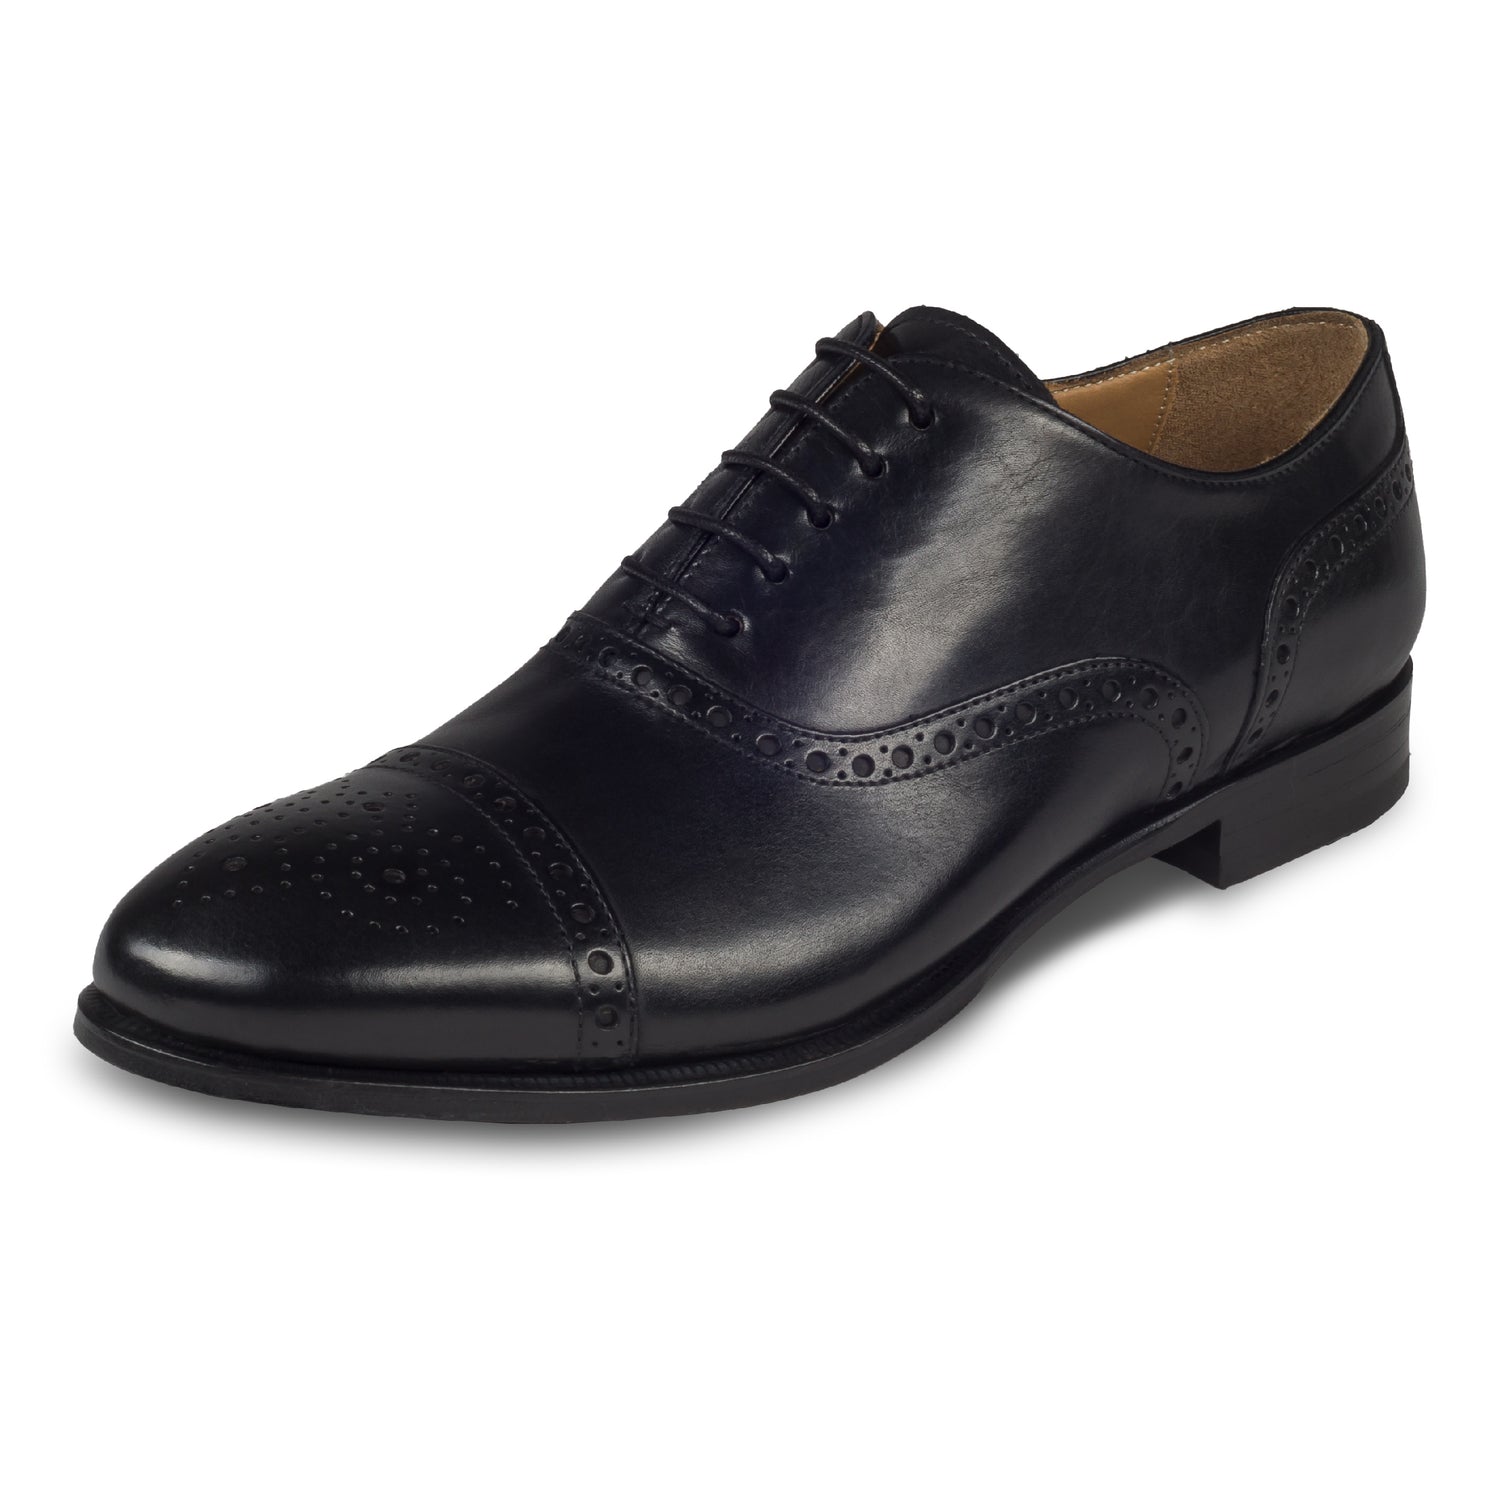 BRECOS Anzugschuhe Half-Brogue Oxford in schwarz, Durchgenäht. Schräge Ansicht linker Schuh. Bei Sisento.